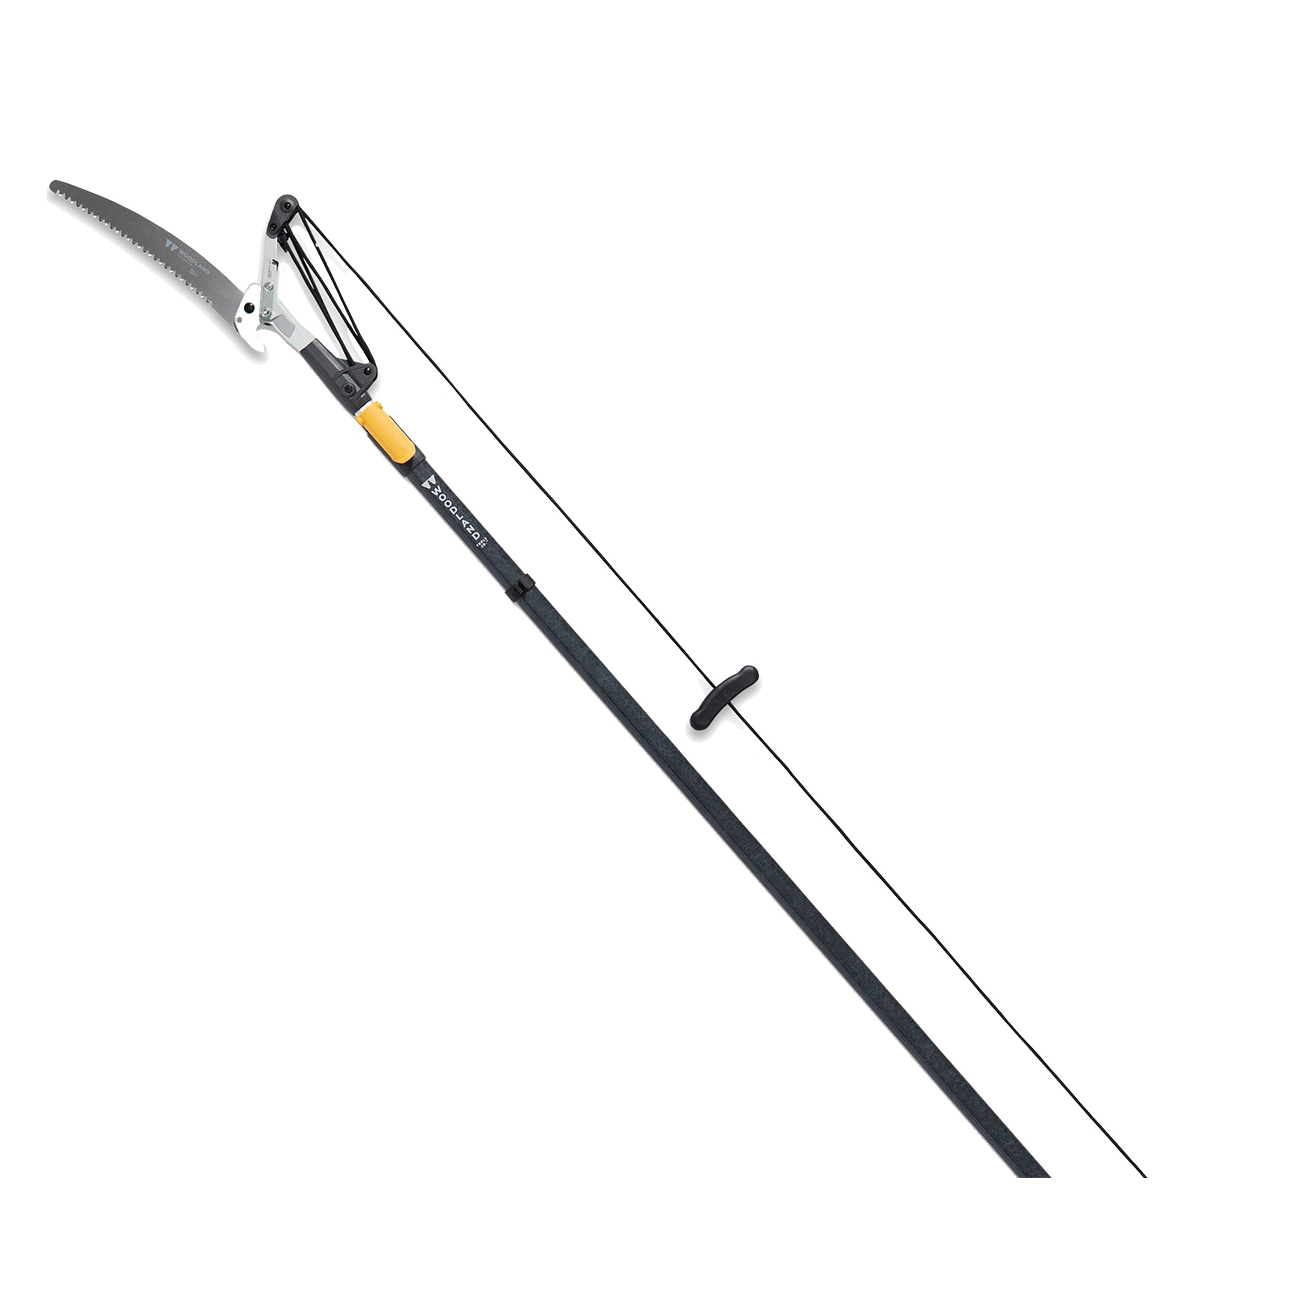 26-7001-000 Pruner, Carbon Steel Blade, D-Handle Handle